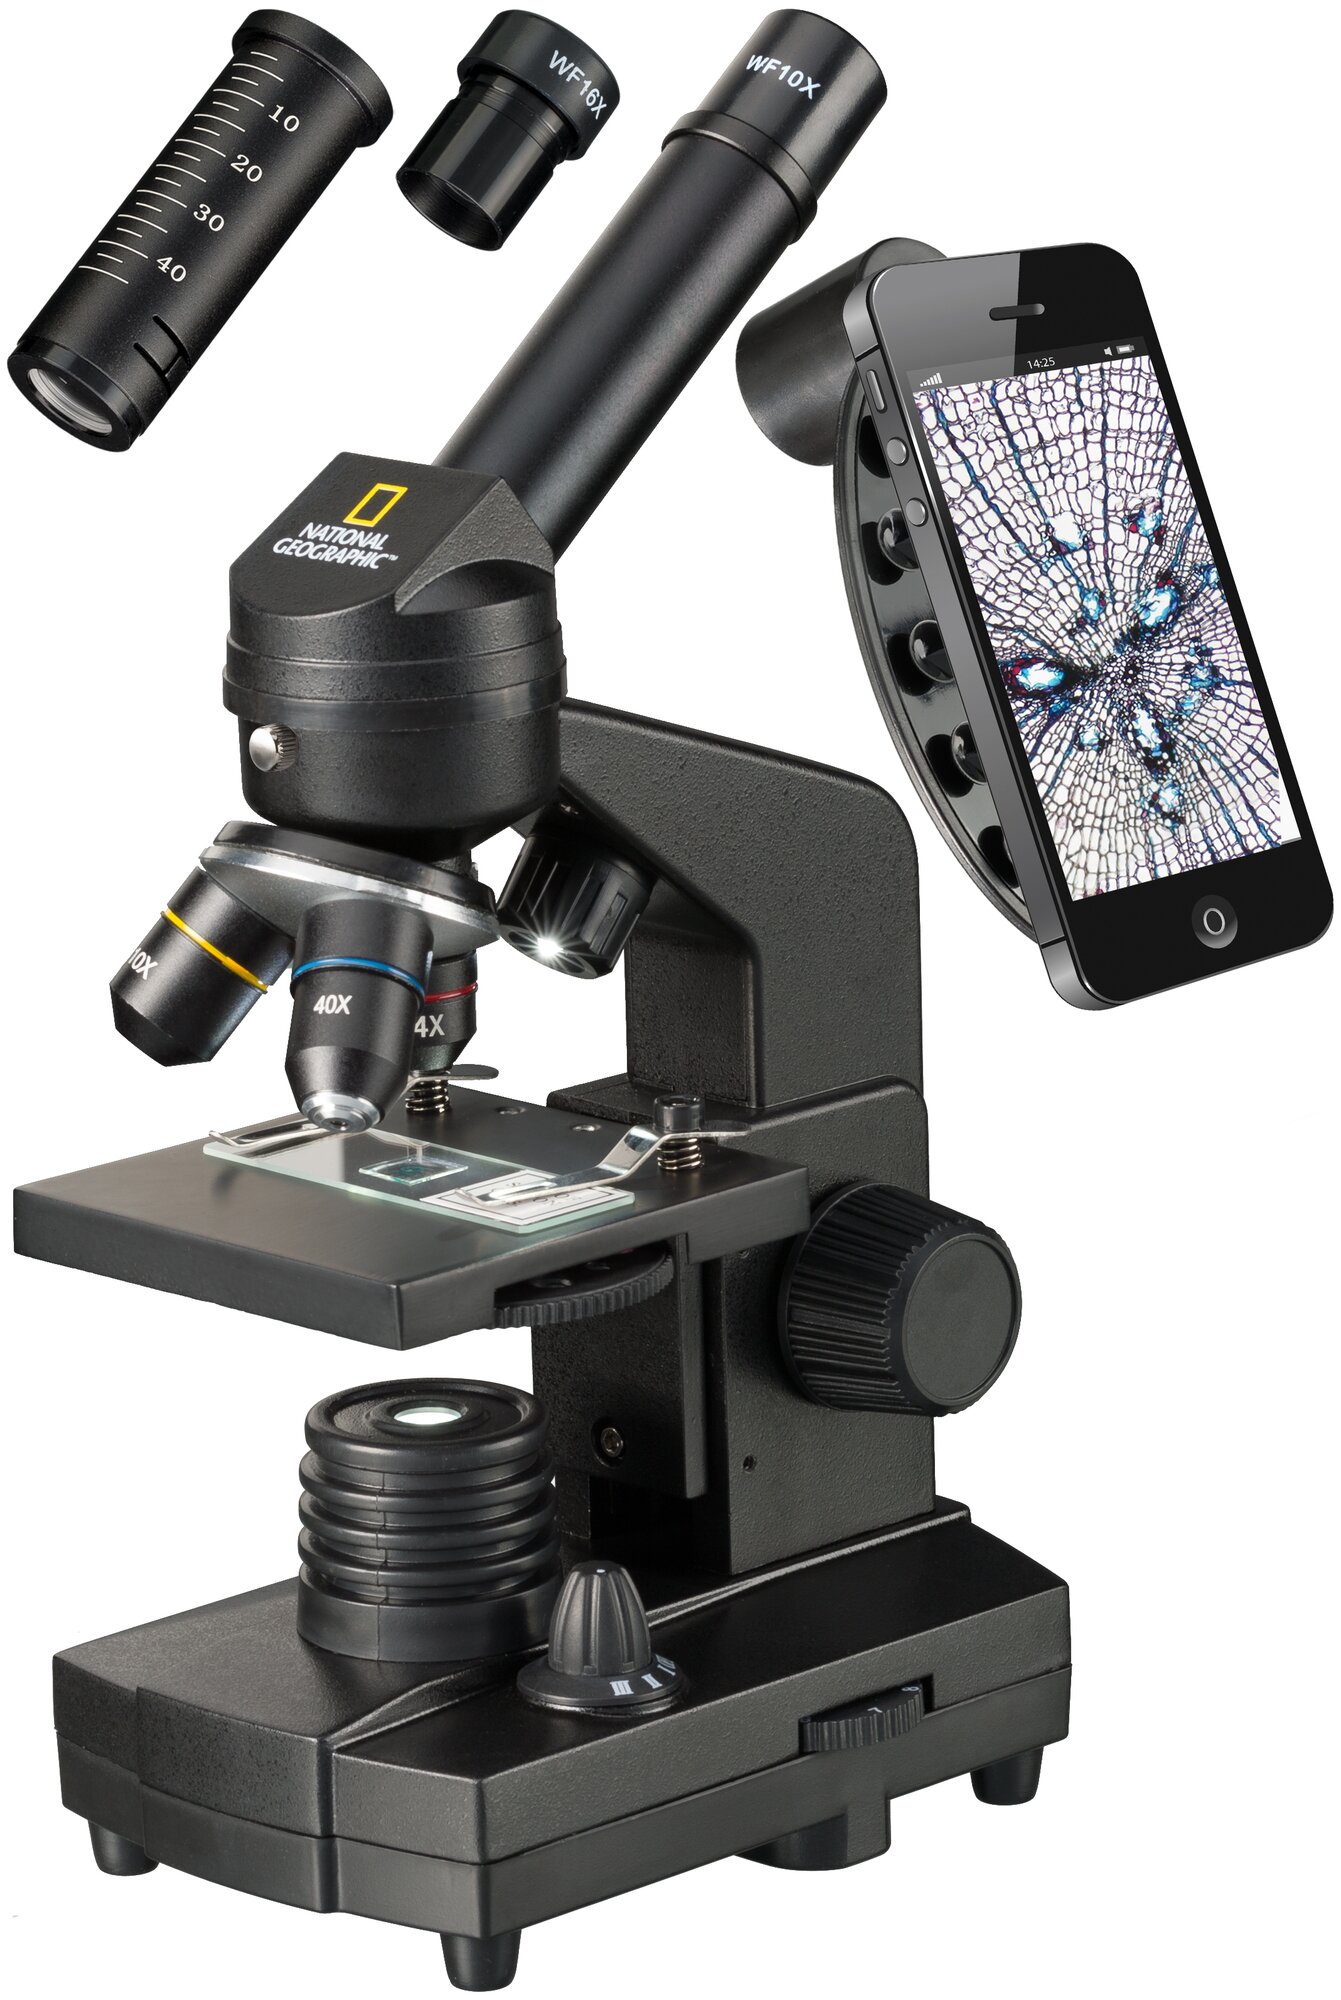 Bresser Микроскоп National Geographic 40x-1280x с держателем для смартфона. Цвет: черный